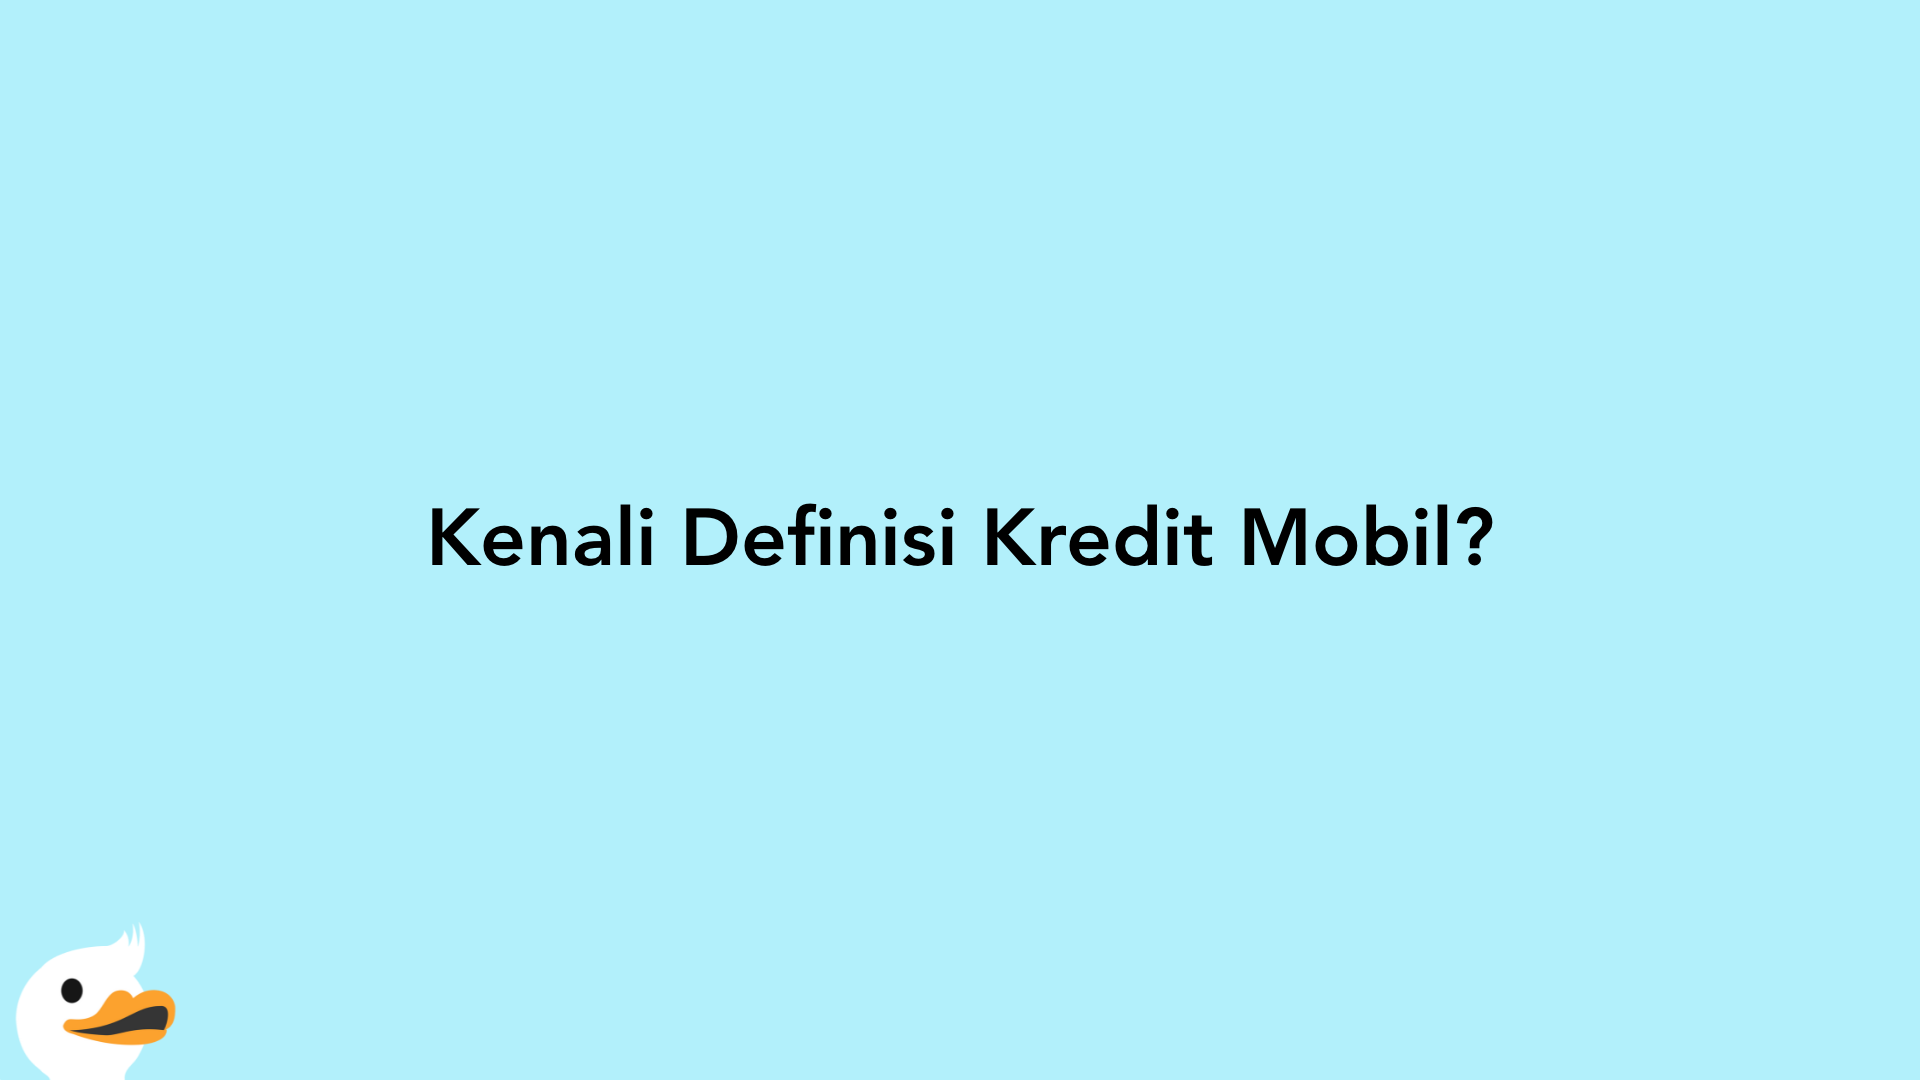 Kenali Definisi Kredit Mobil?